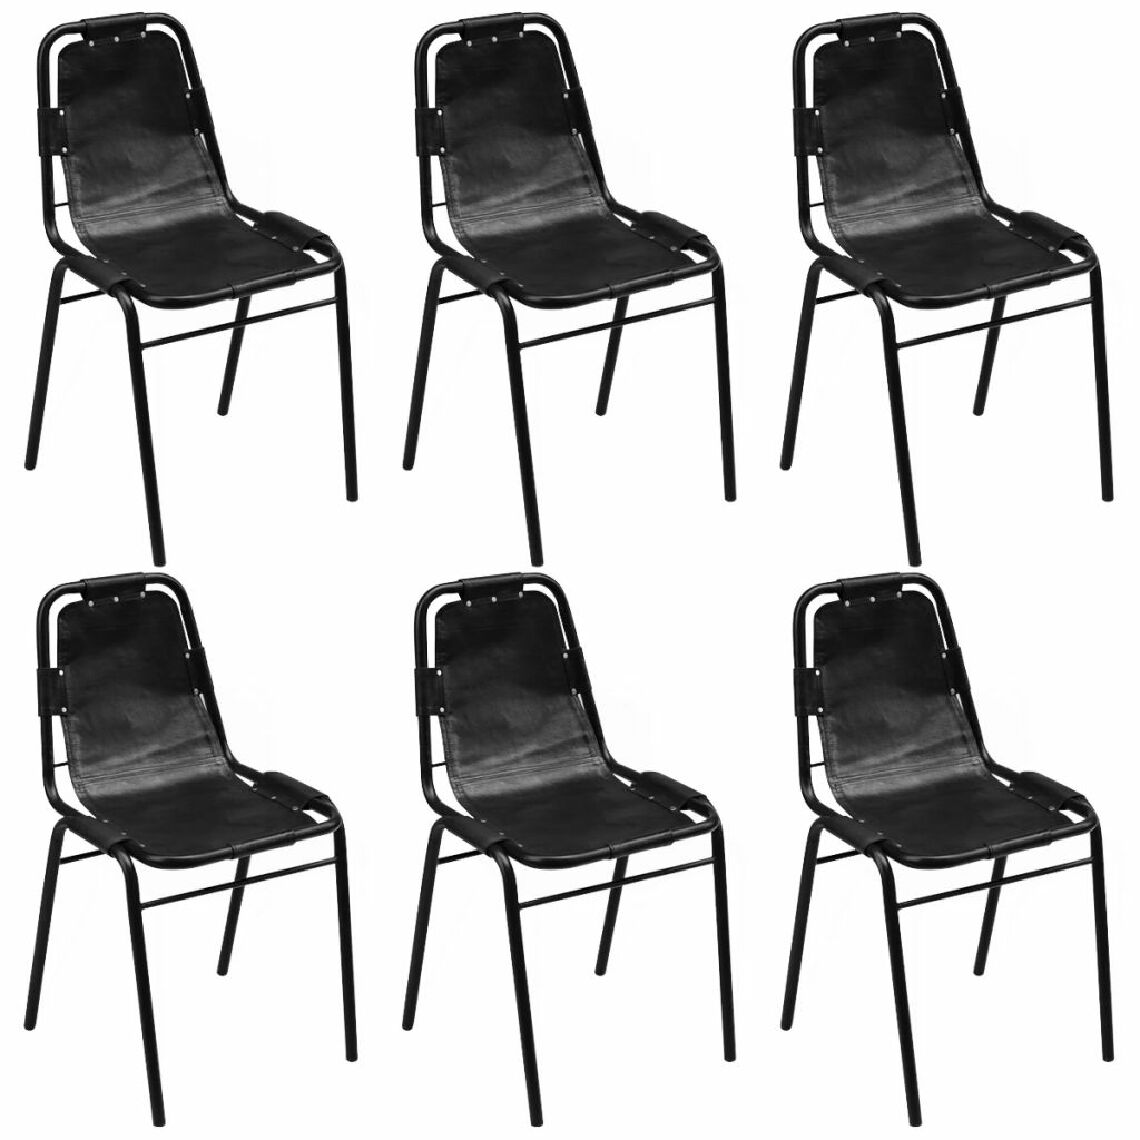 Chunhelife - Chunhelife Chaises de salle à manger 6 pcs Noir Cuir véritable - Chaises